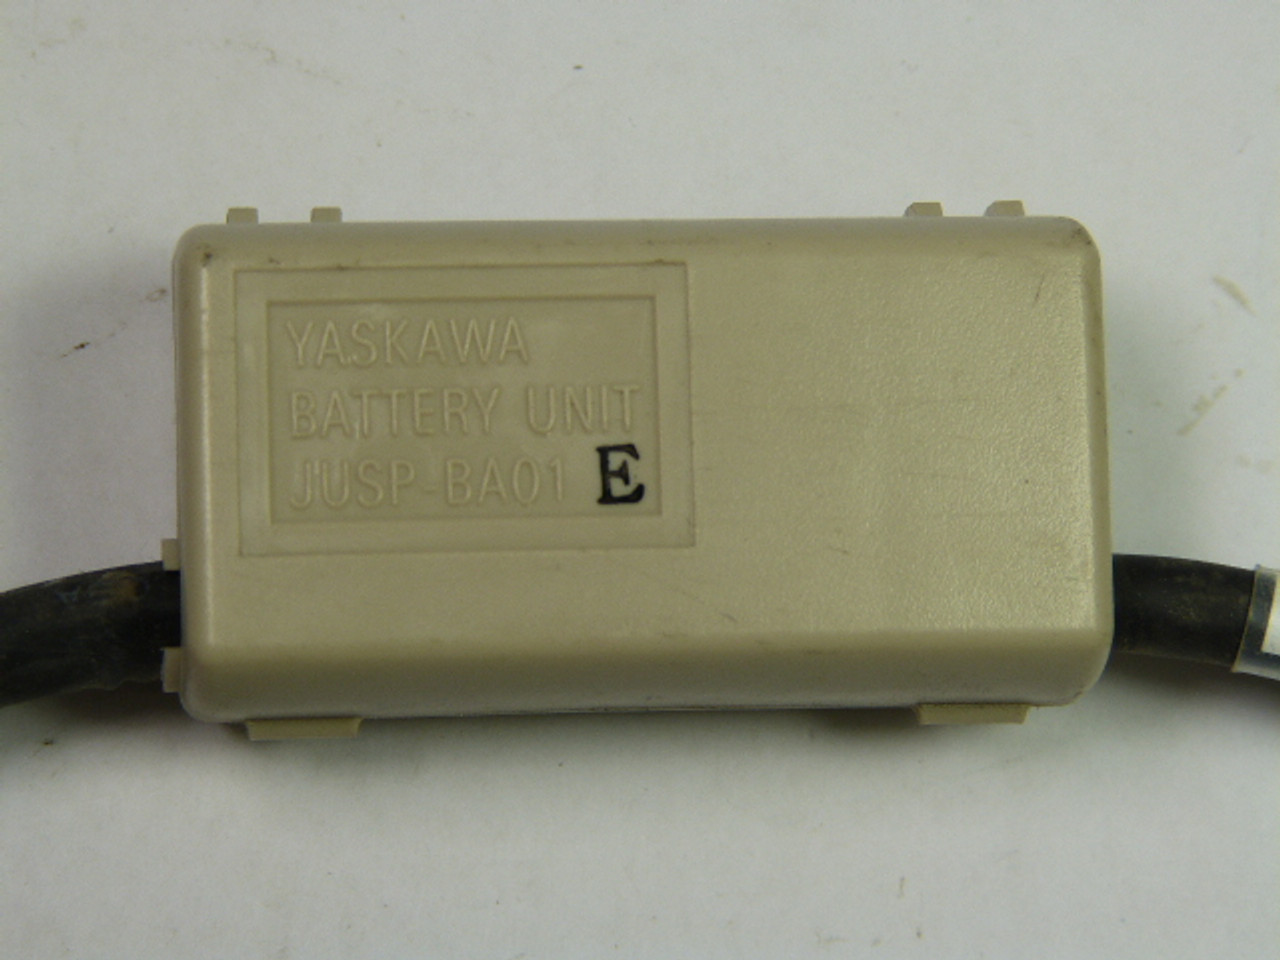 Yaskawa JUSP-BA01-E Battery Unit Case USED